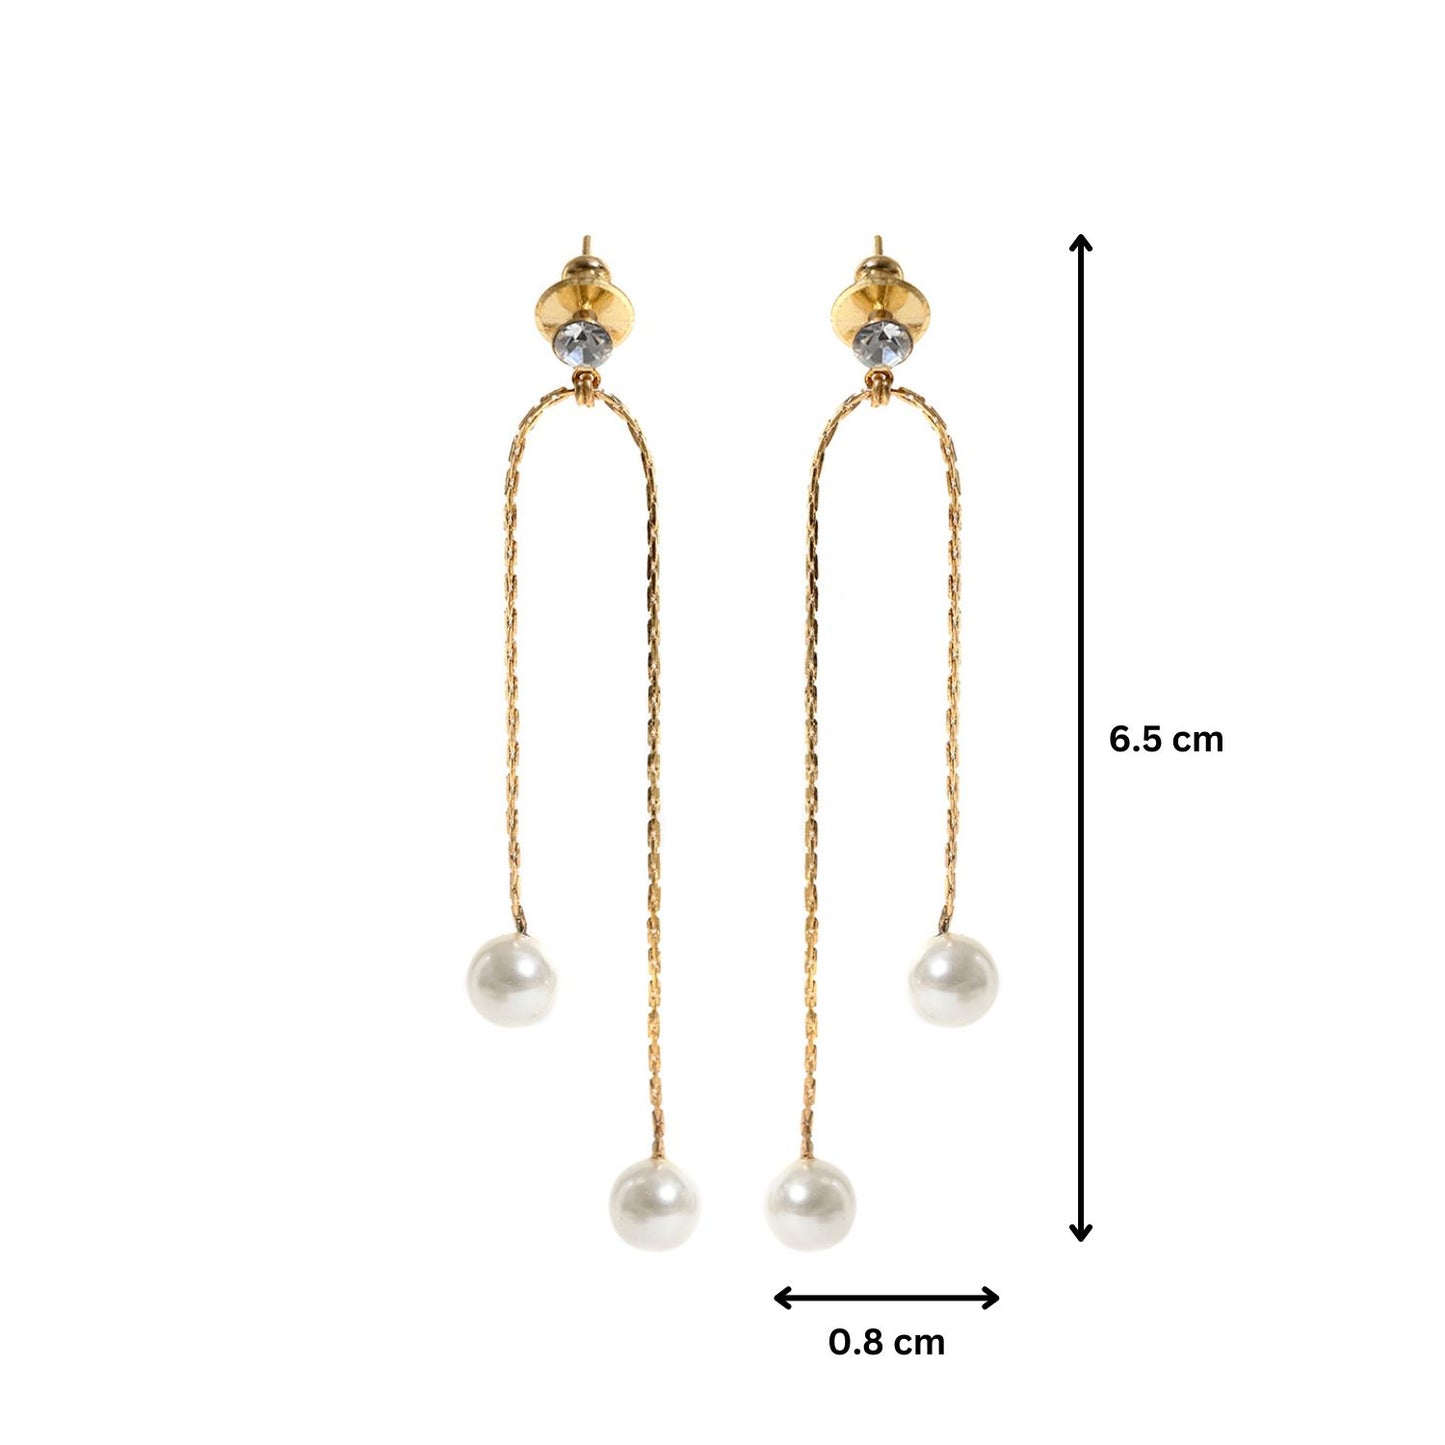 Double Chain Pearl Drop Earrings